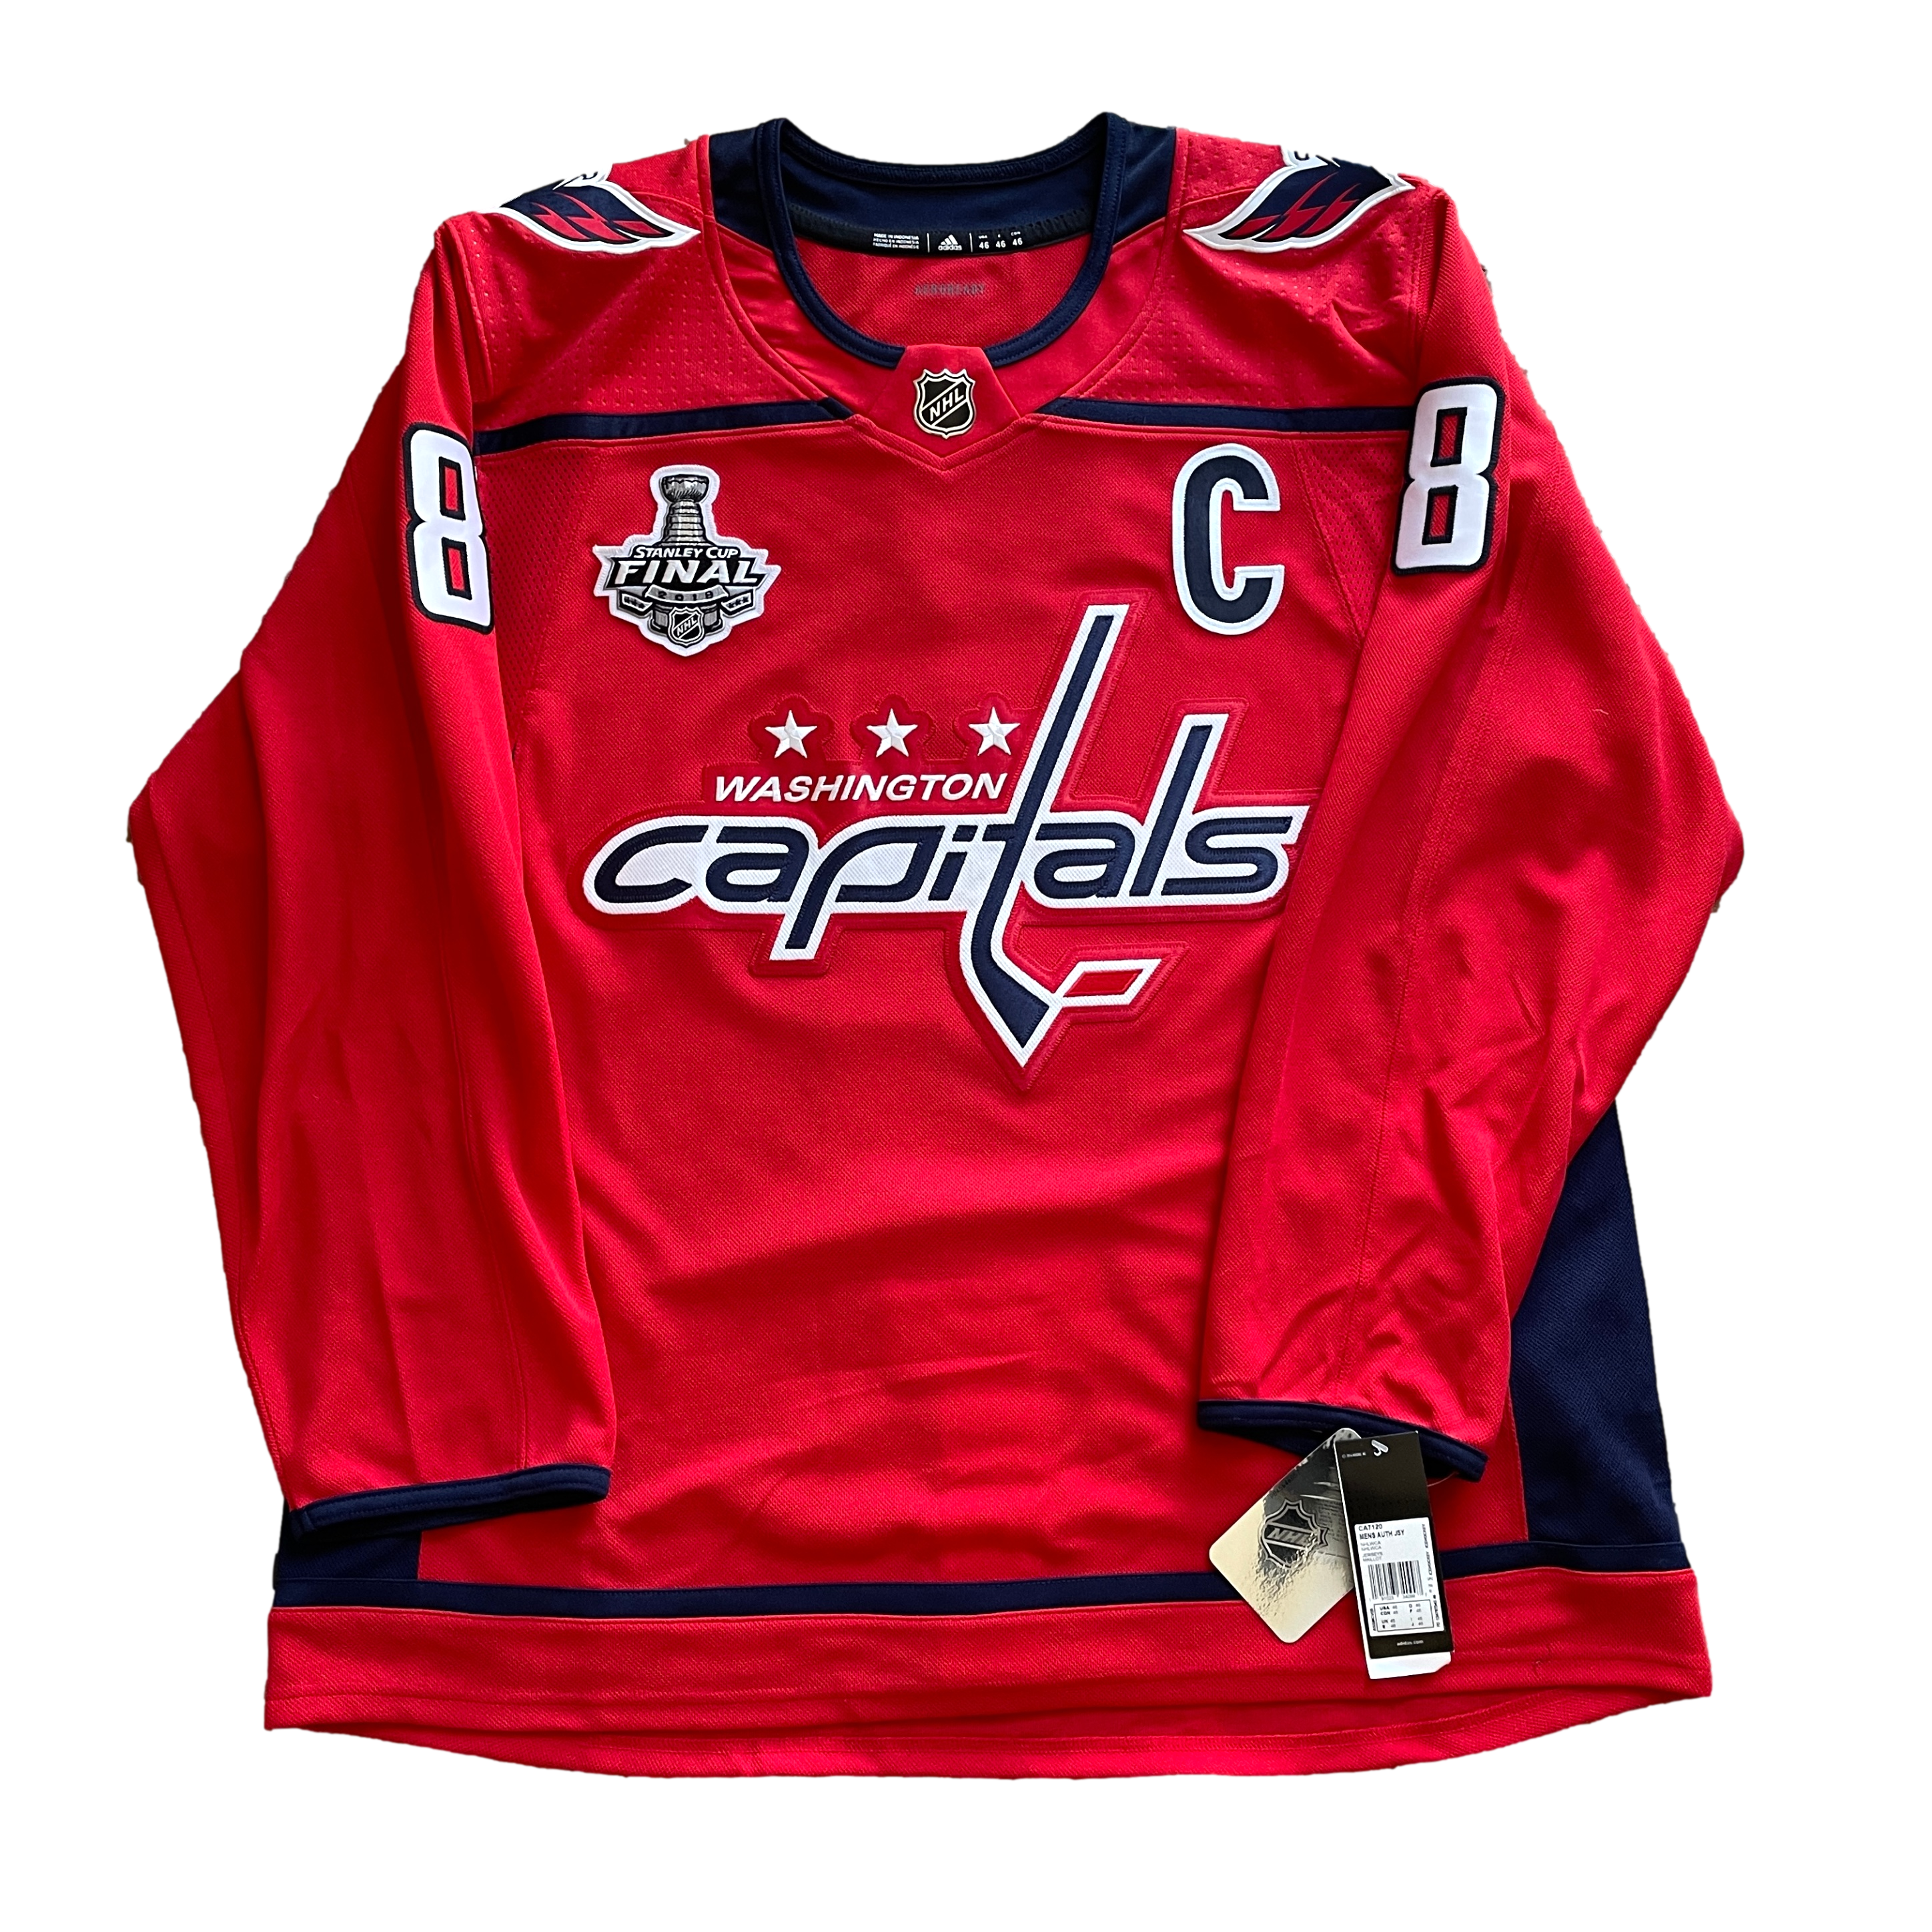 Washington Capitals NHL Hockey Jersey (L)